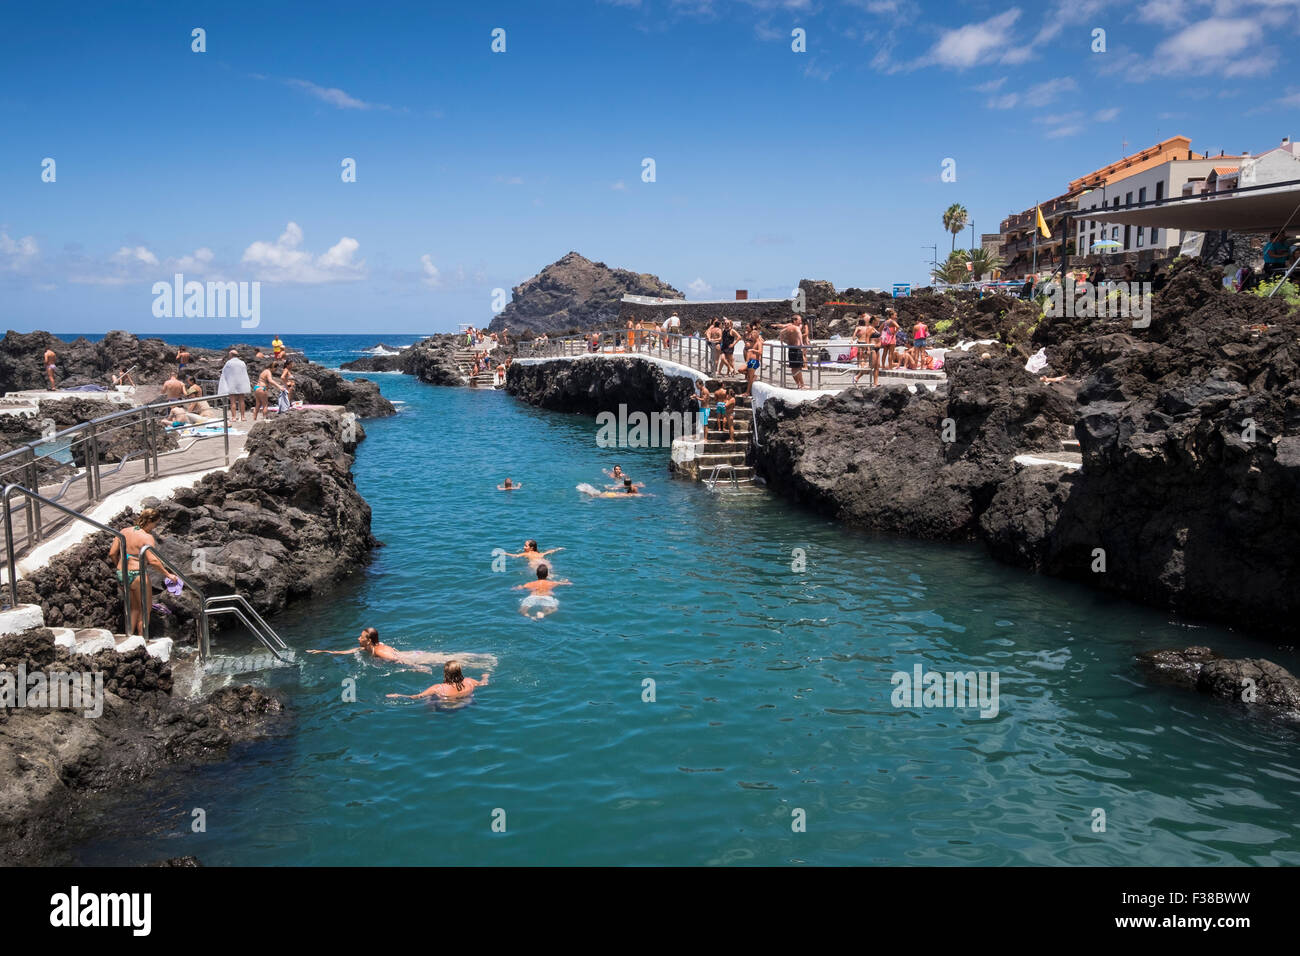 La mer piscines à Garachico populaires avec des nageurs au cours de l'été calme, Tenerife, Canaries, Espagne. Banque D'Images